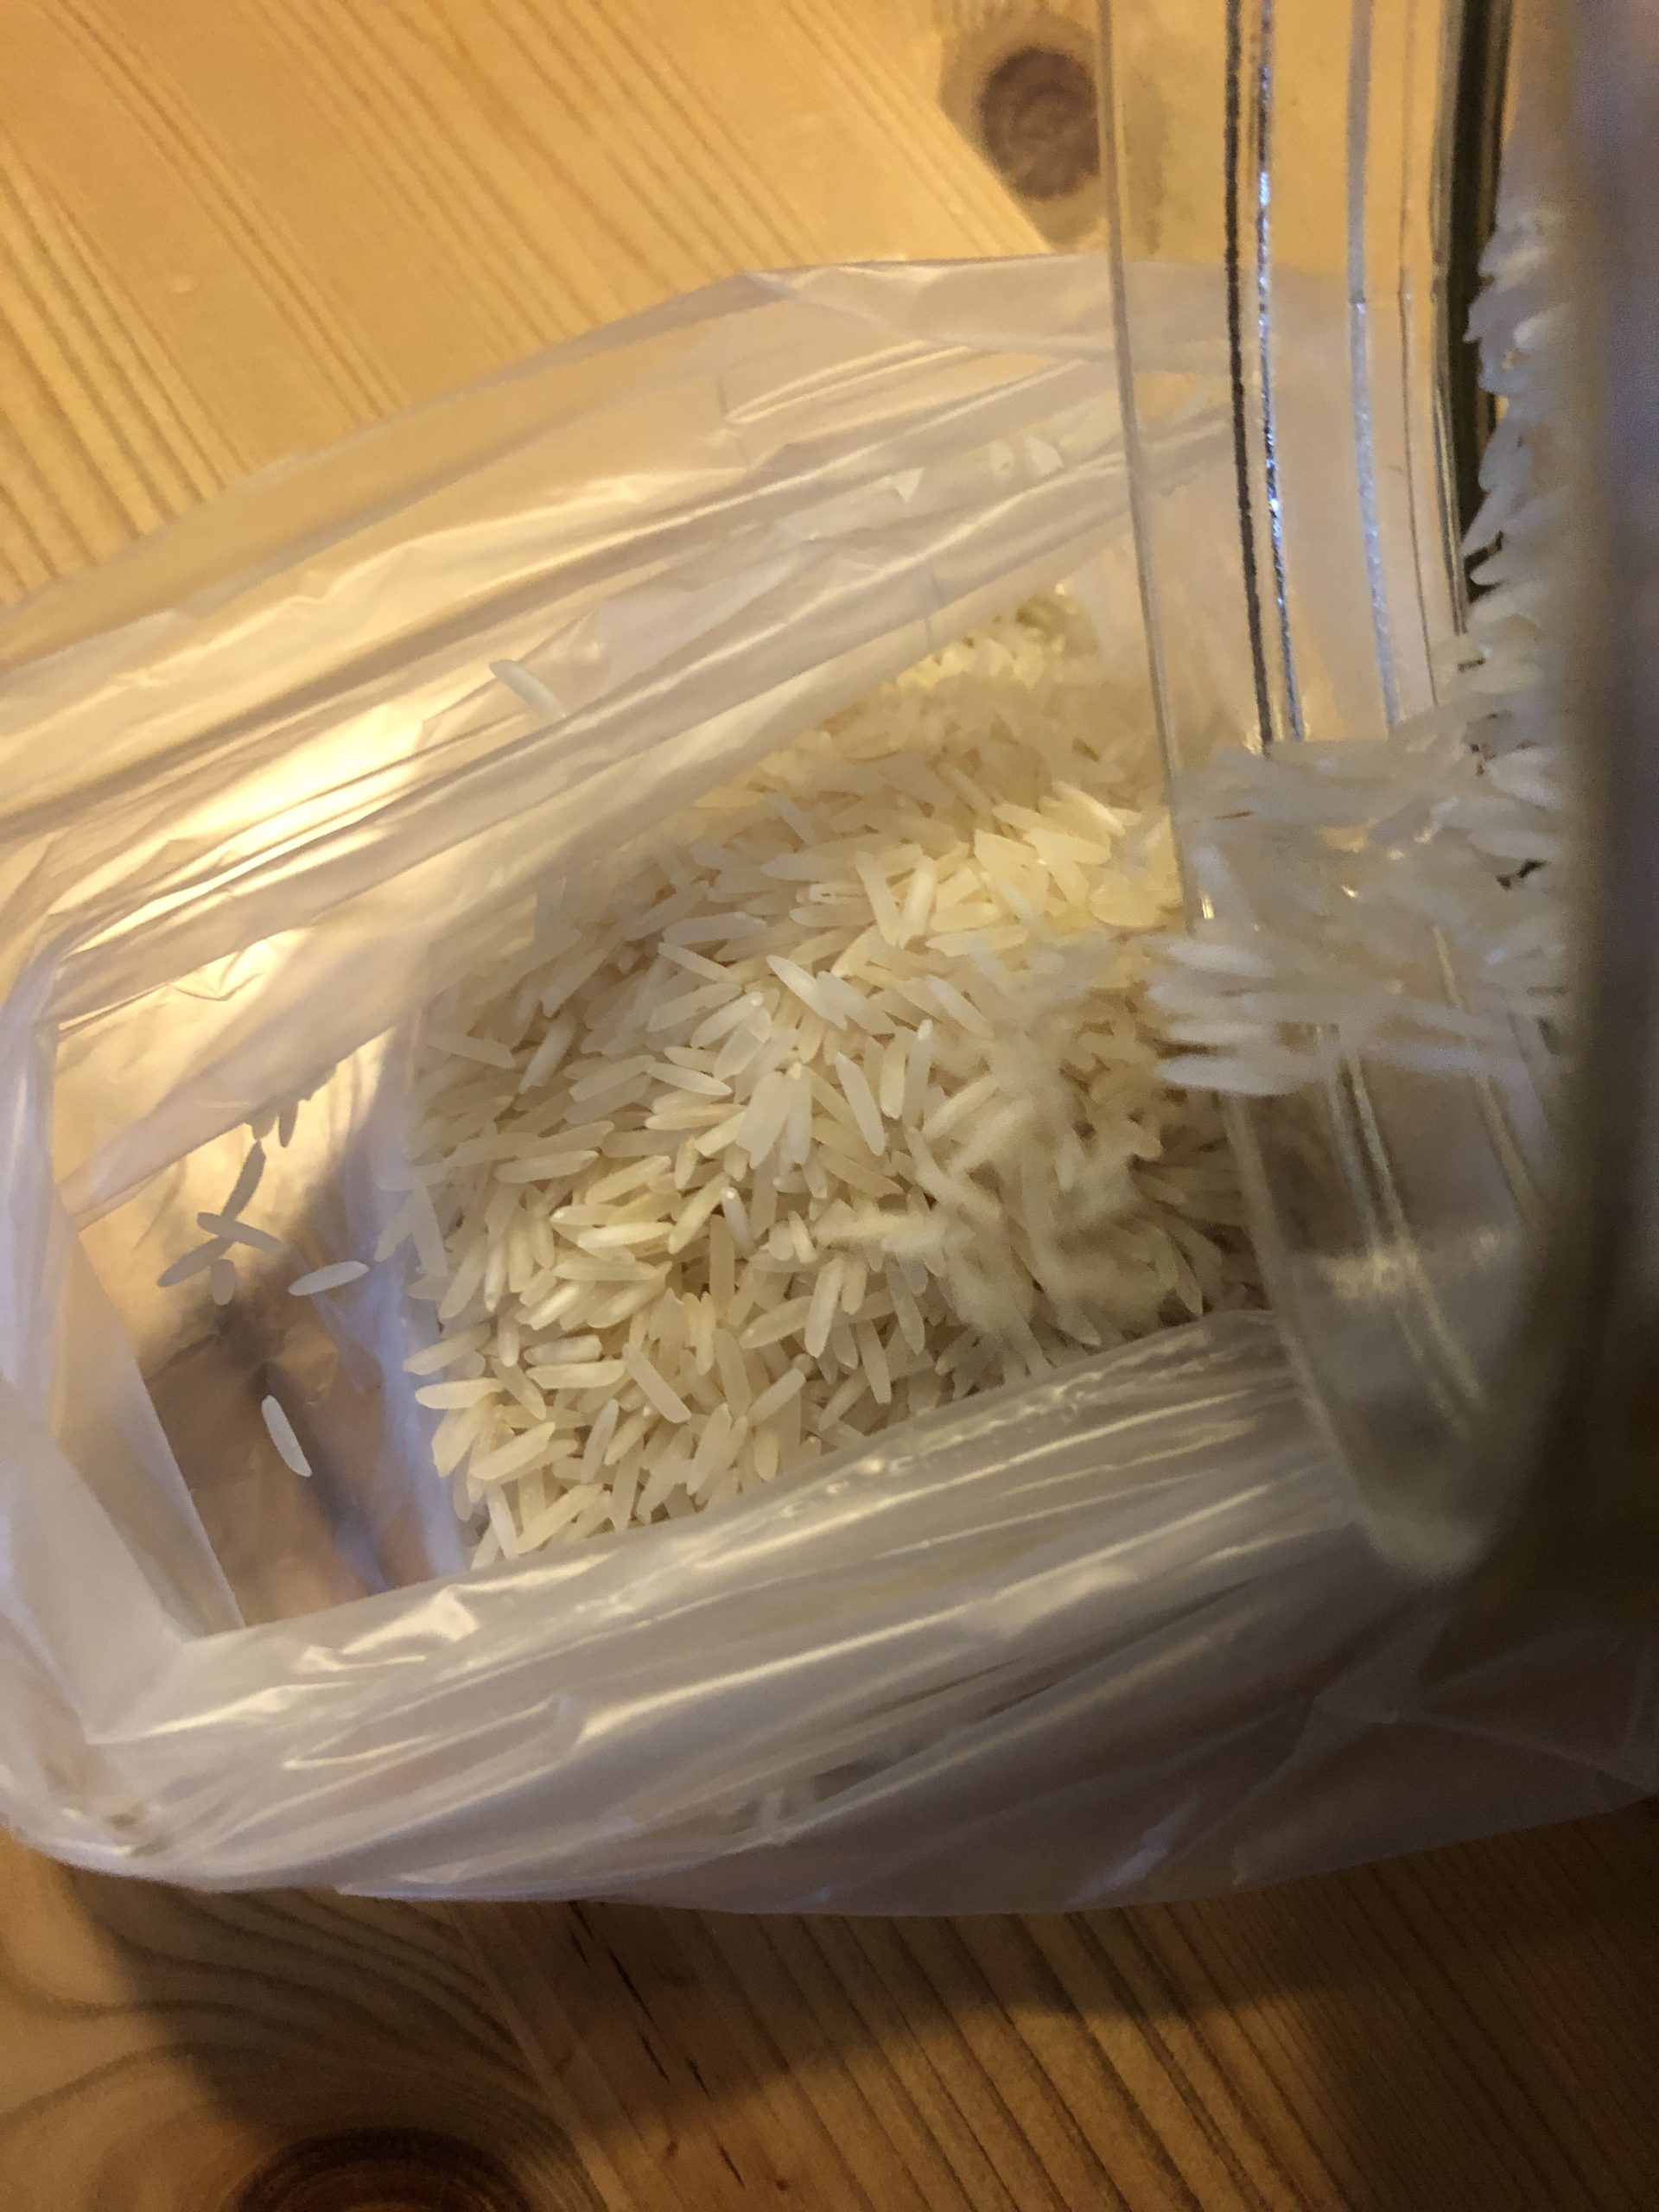 Bild zum Schritt 5 für das Bastel- und DIY-Abenteuer für Kinder: 'Jetzt füllt ihr den Reis in den Frühstücksbeutel.'